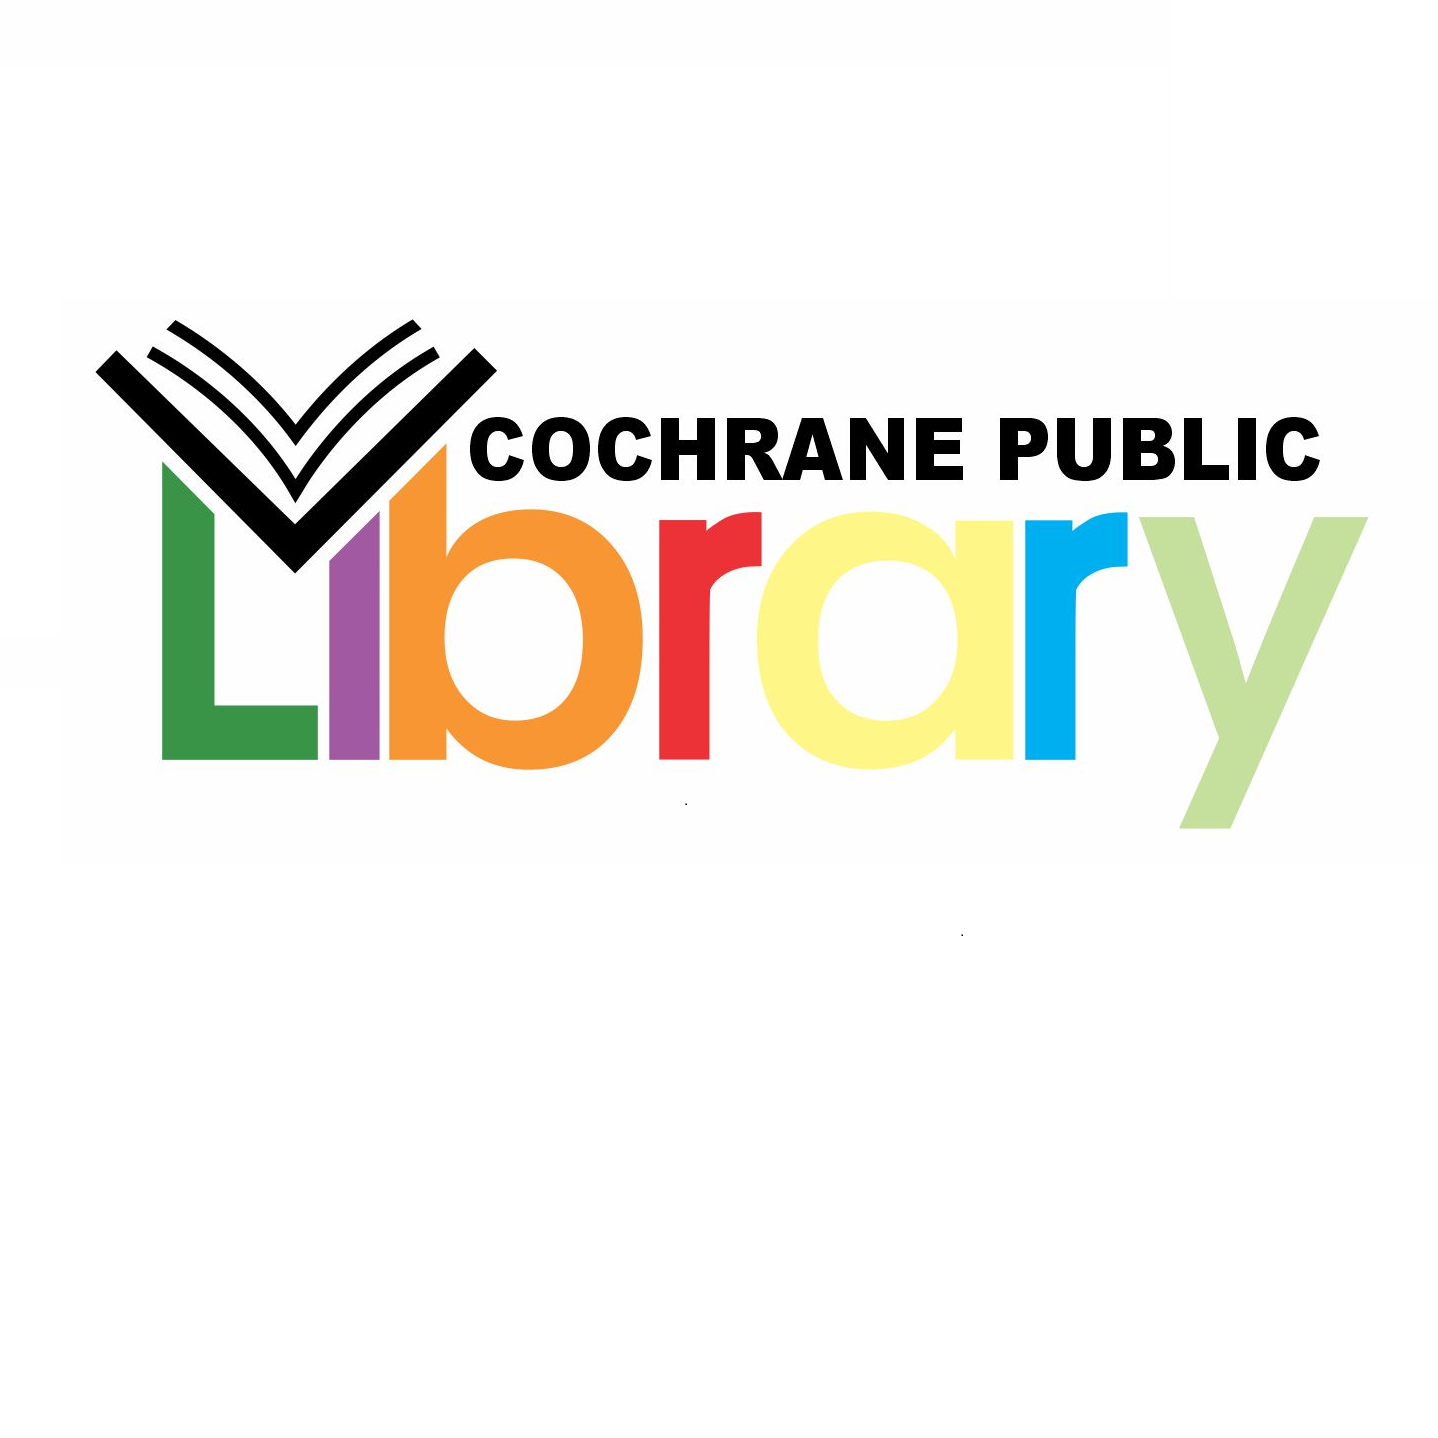 Cochrane-Public-Library